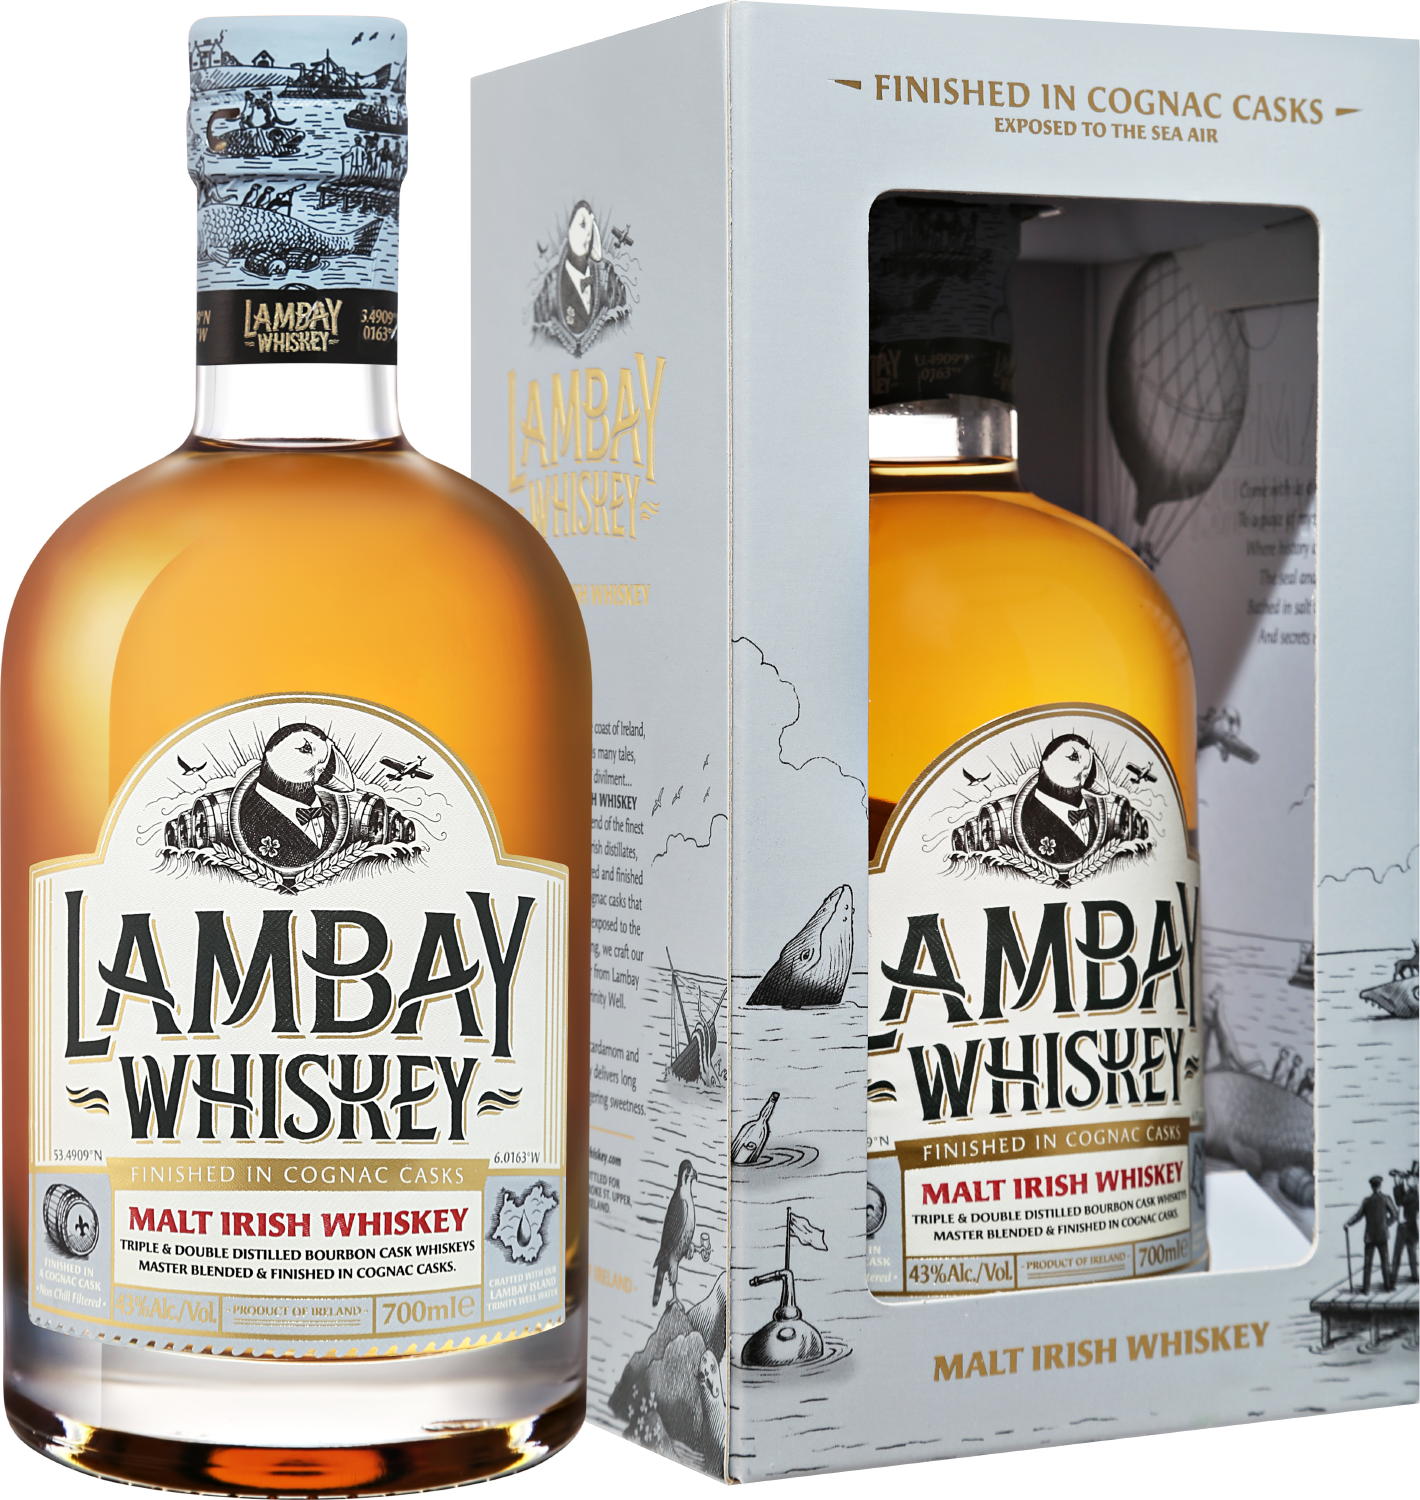 Lambay Malt Irish Whiskey 3 y.o. (gift box) goalong single malt whiskey small batch gift box